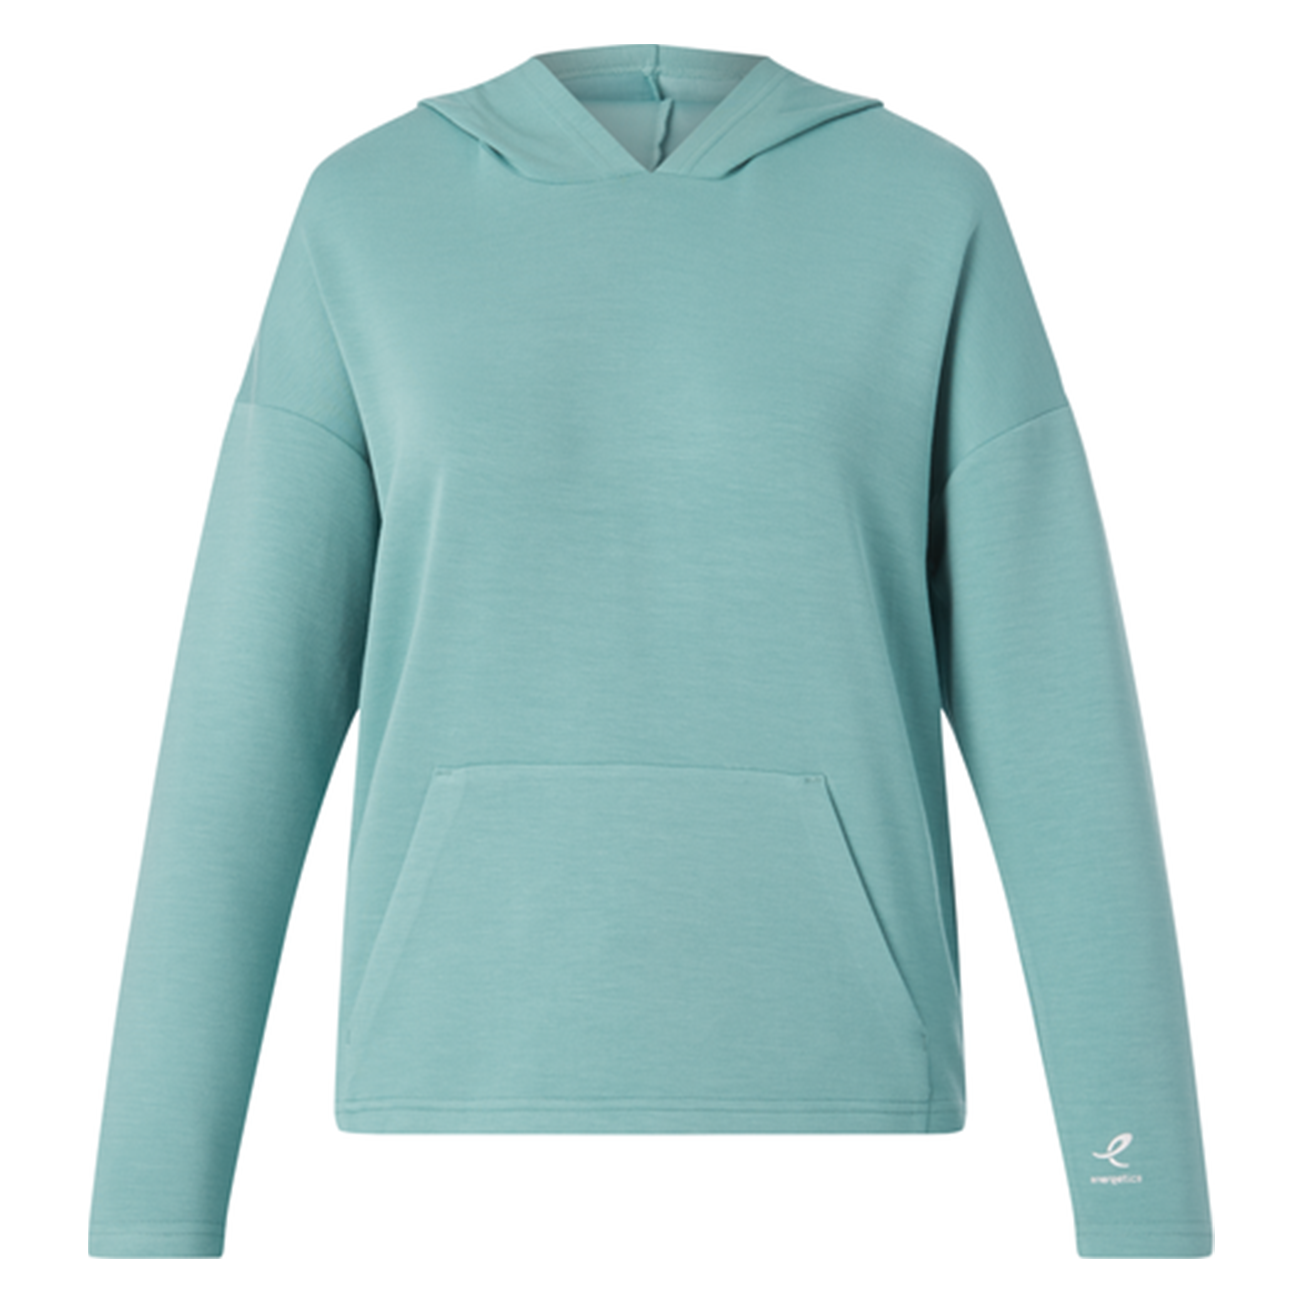 Energetics Oman Hooded Sweatshirt For Women, Turquoise